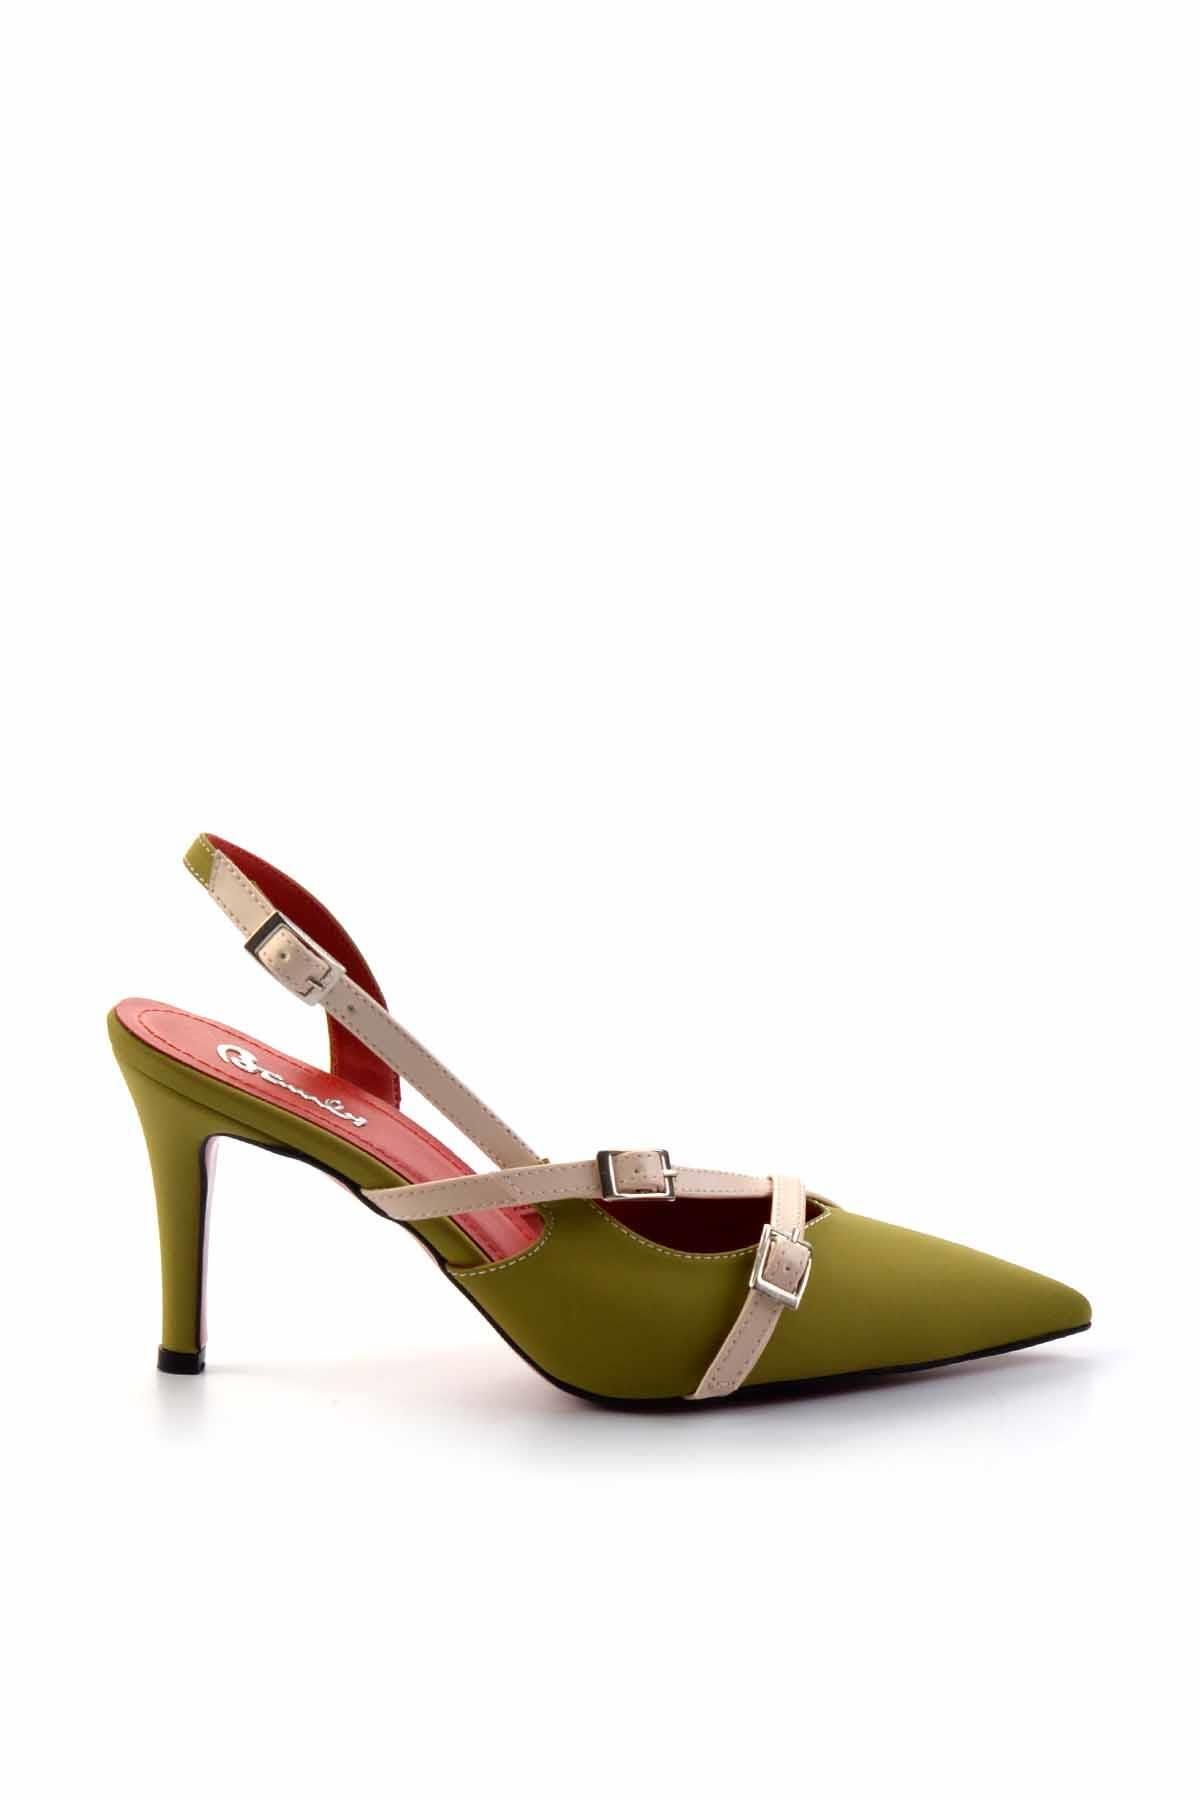 Bambi Yeşil Bej Nubuk   Kadın Klasik Topuklu Ayakkabı K01455018501